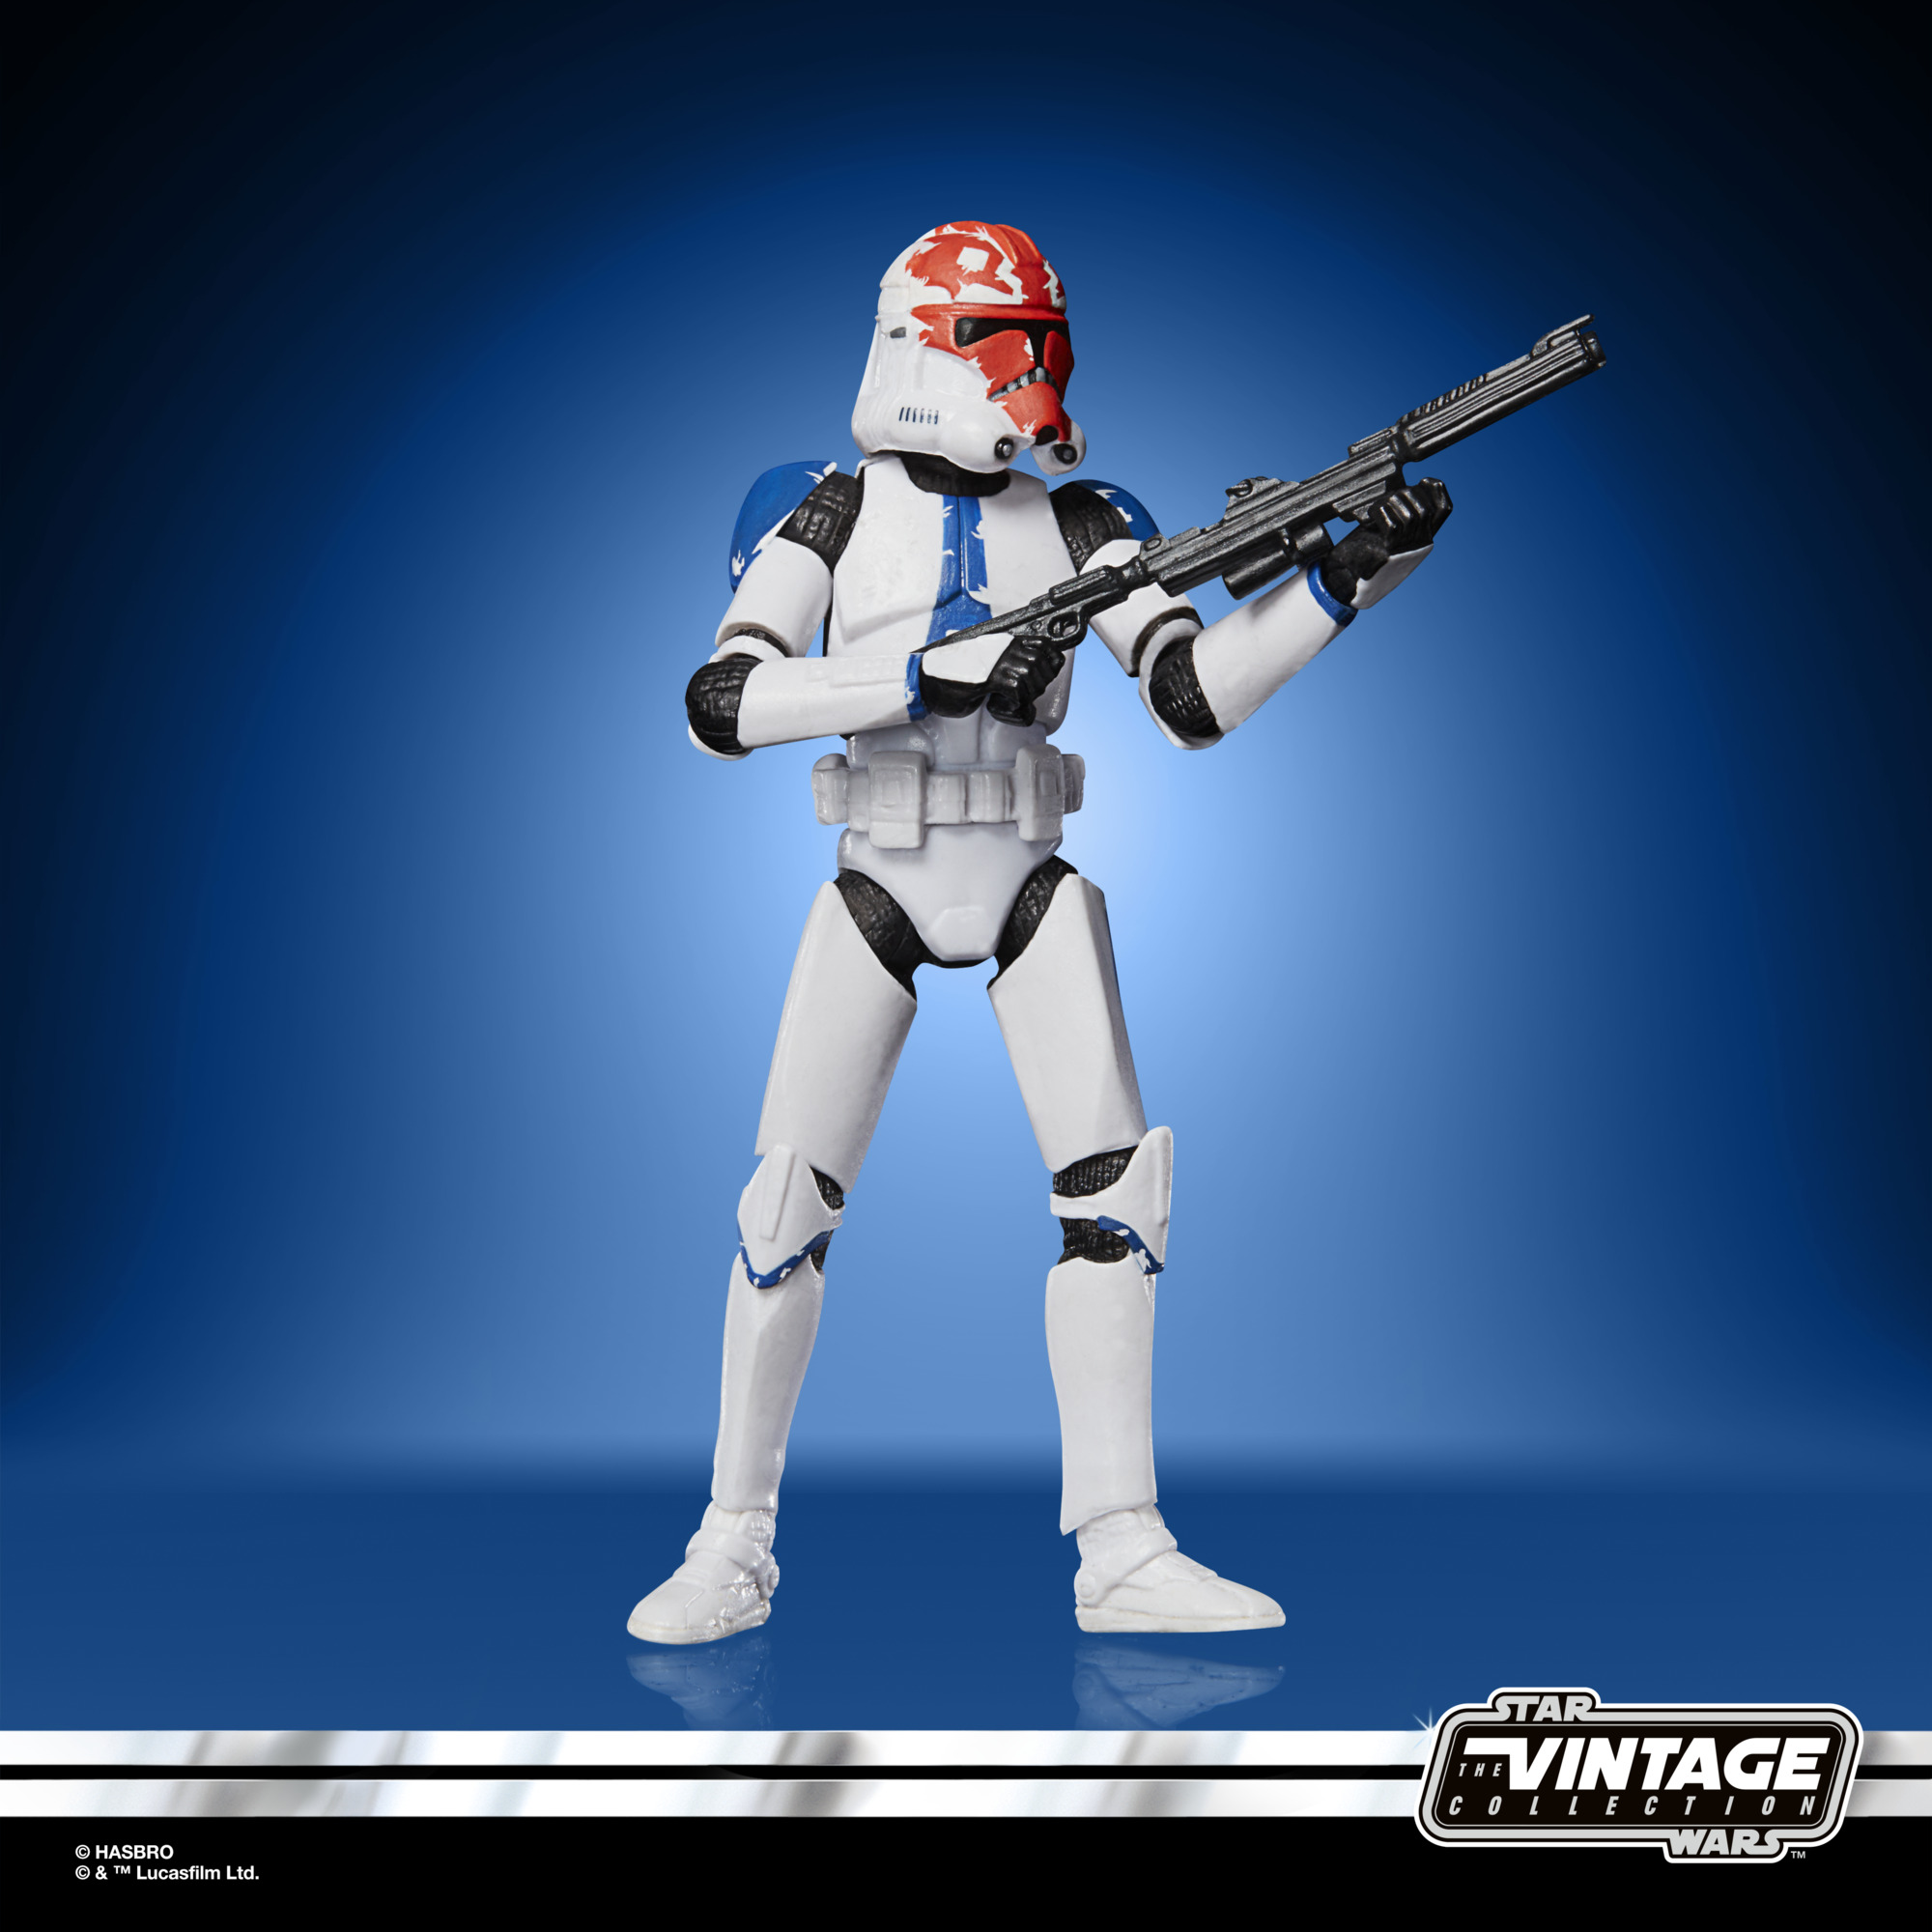 VP leicht beschädigt!!! Star Wars The Vintage Collection 332nd Ahsoka's Clone Trooper F56315L00 5010993992218